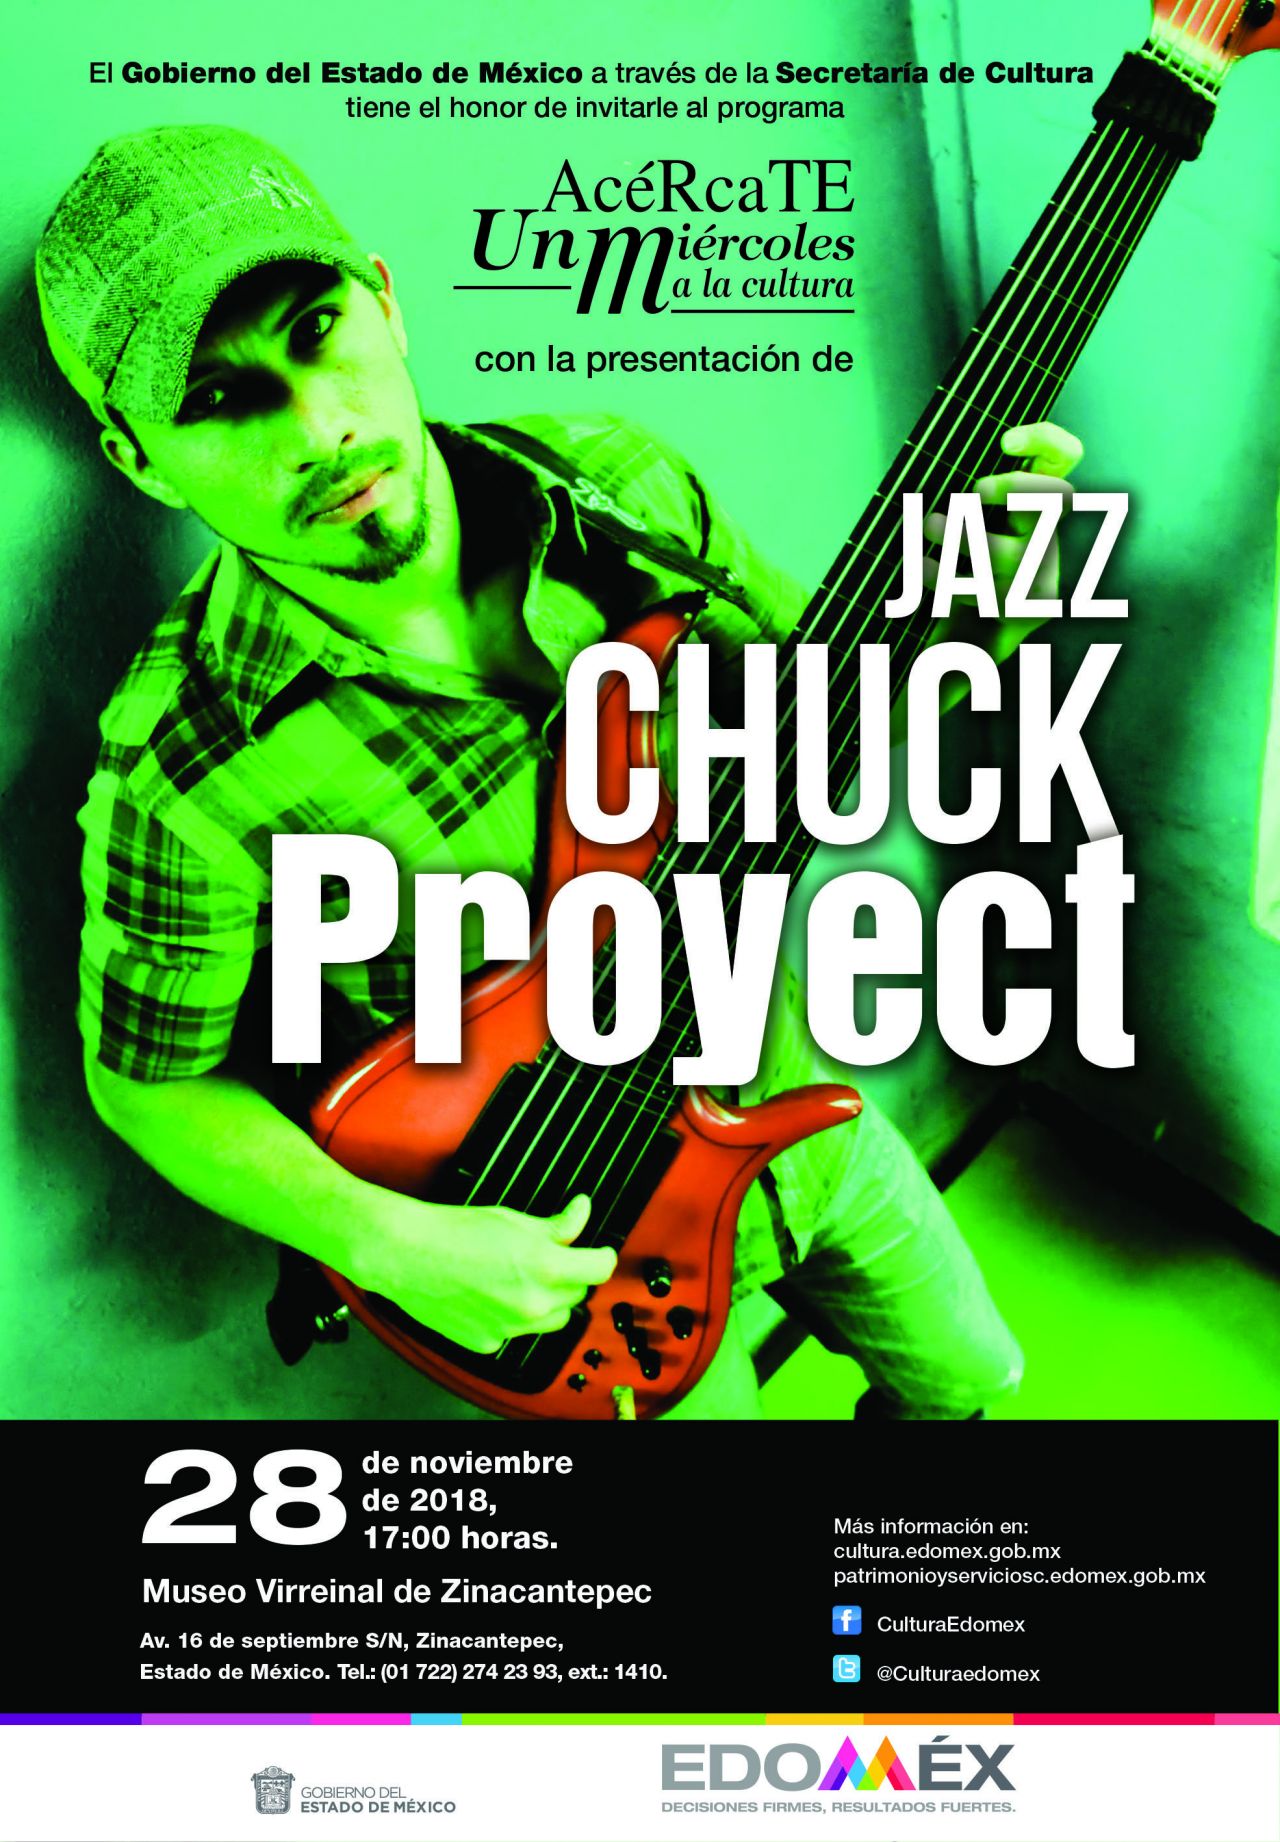 Anuncian concierto del grupo jazz chuck project en museo virreinal de Zinacantepec 